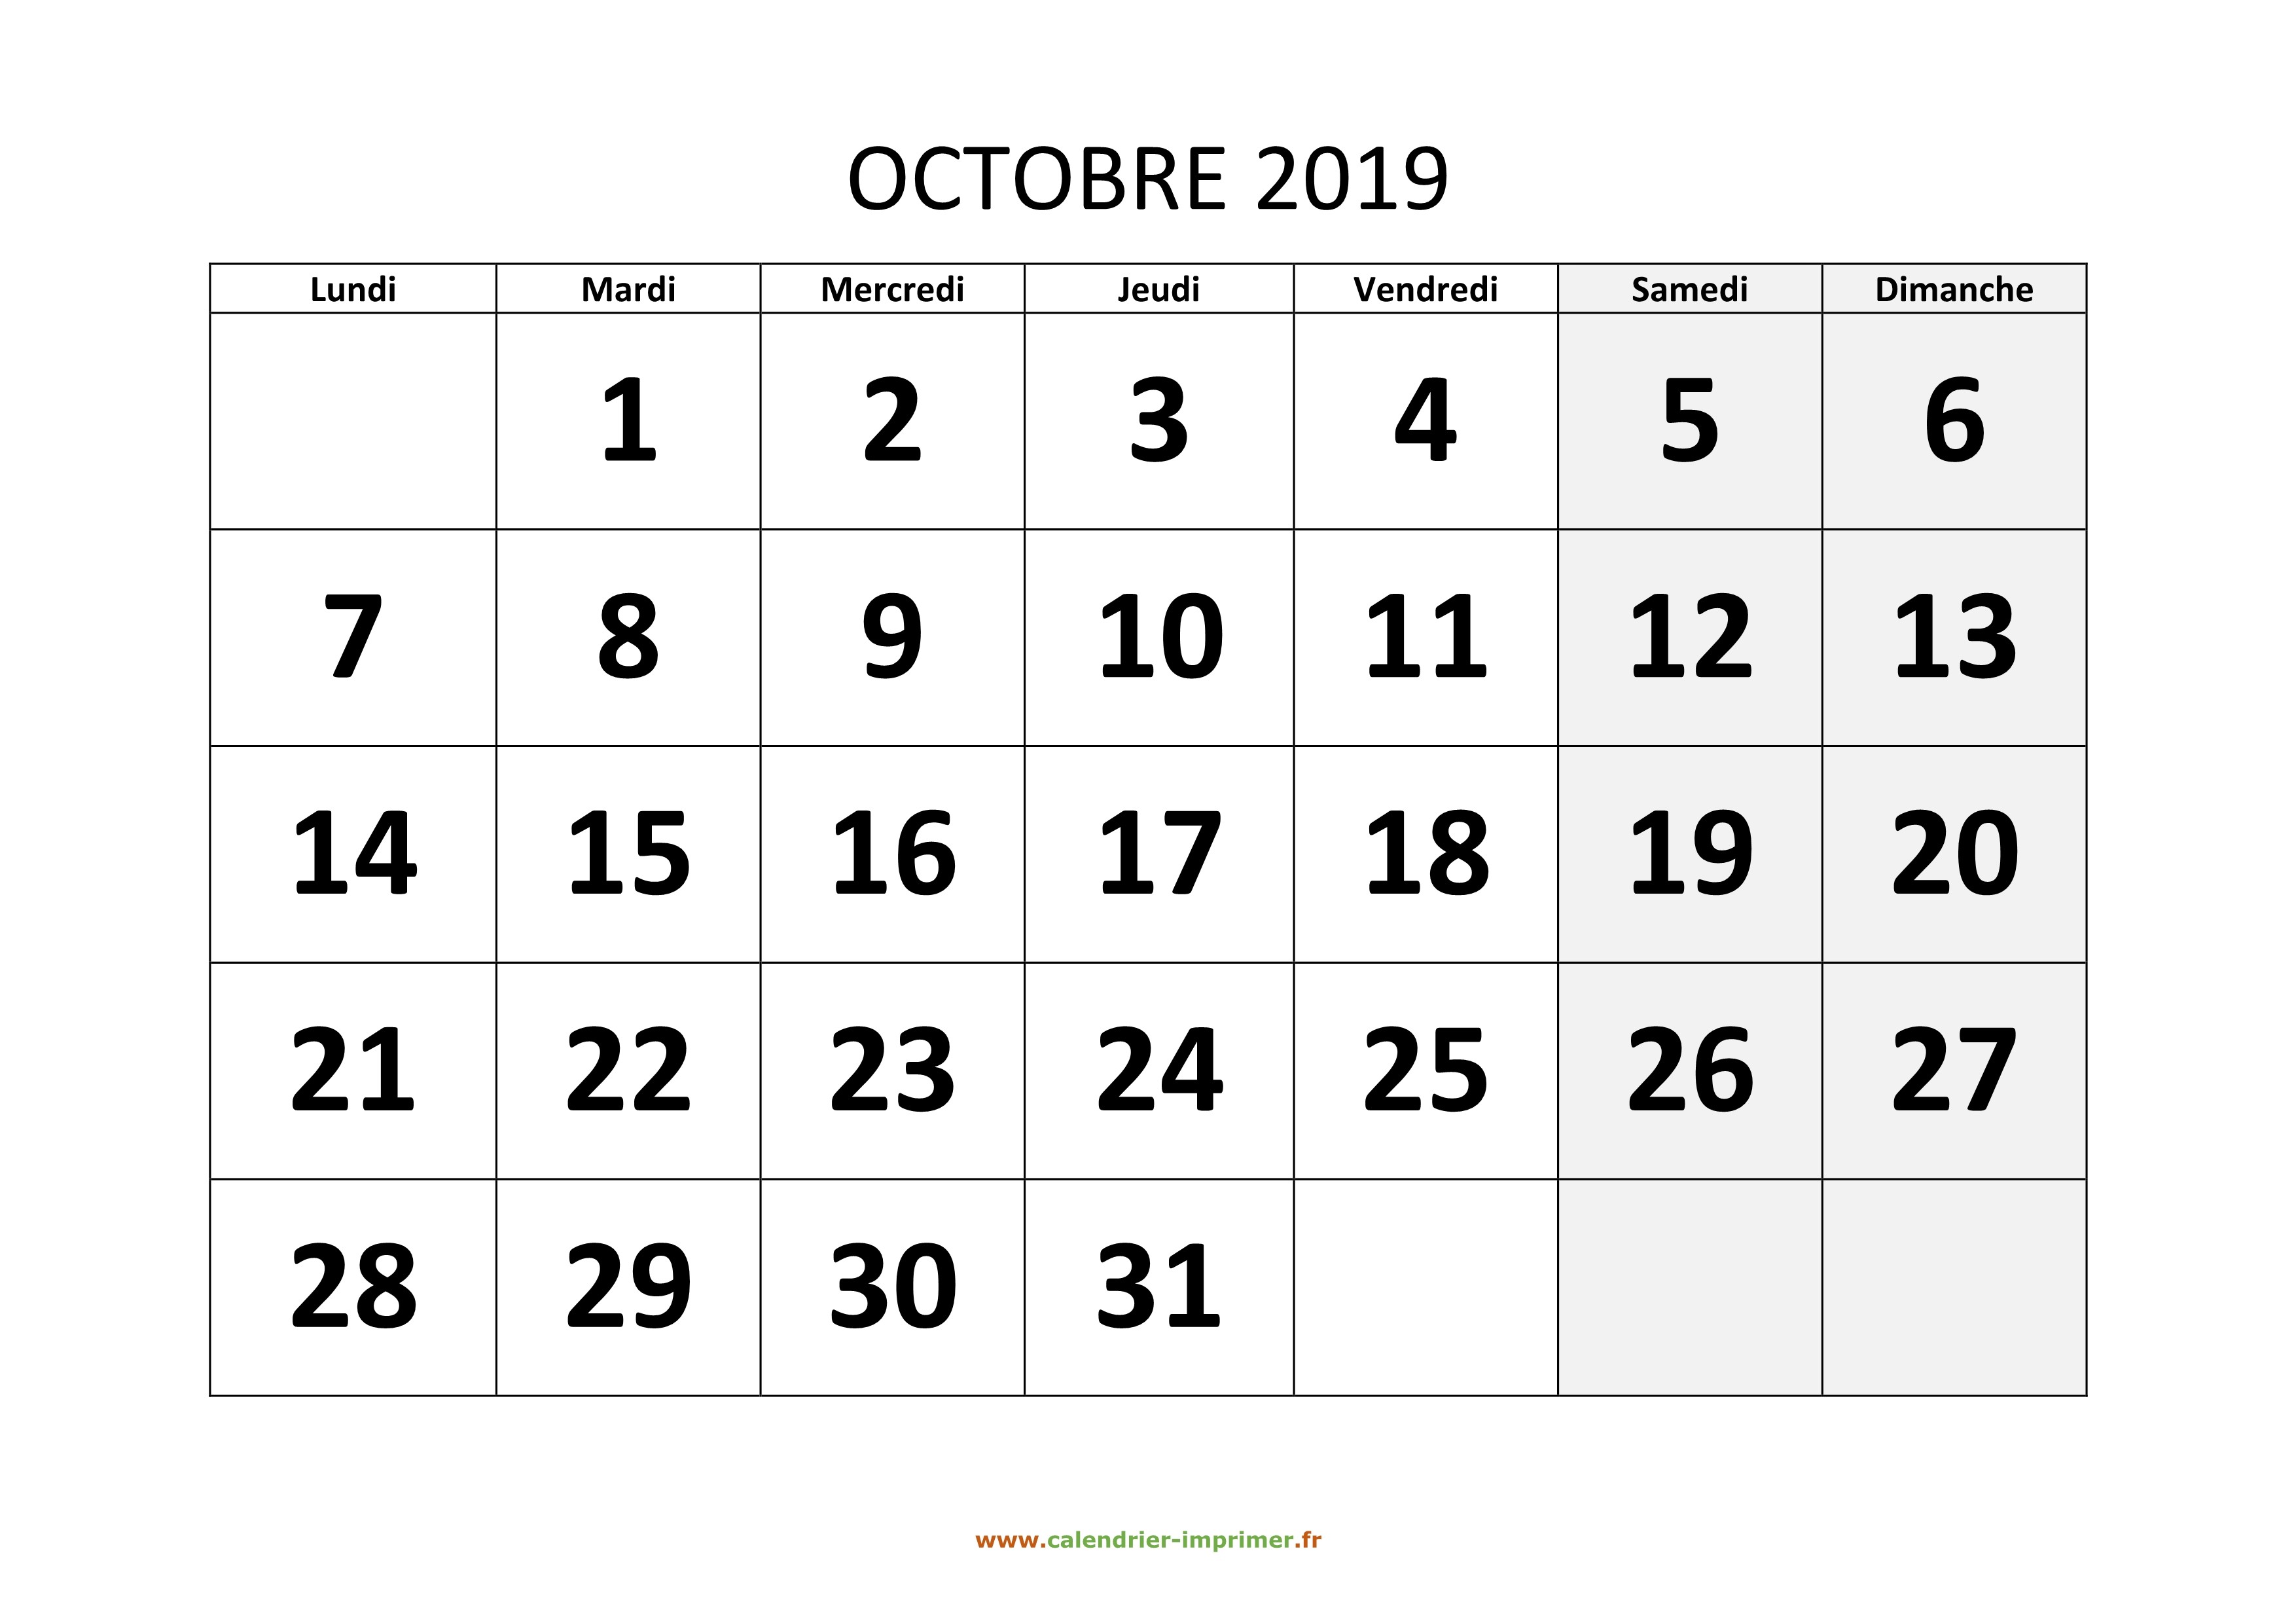 Calendrier Hiver 2019-2020 - Octobre 2019